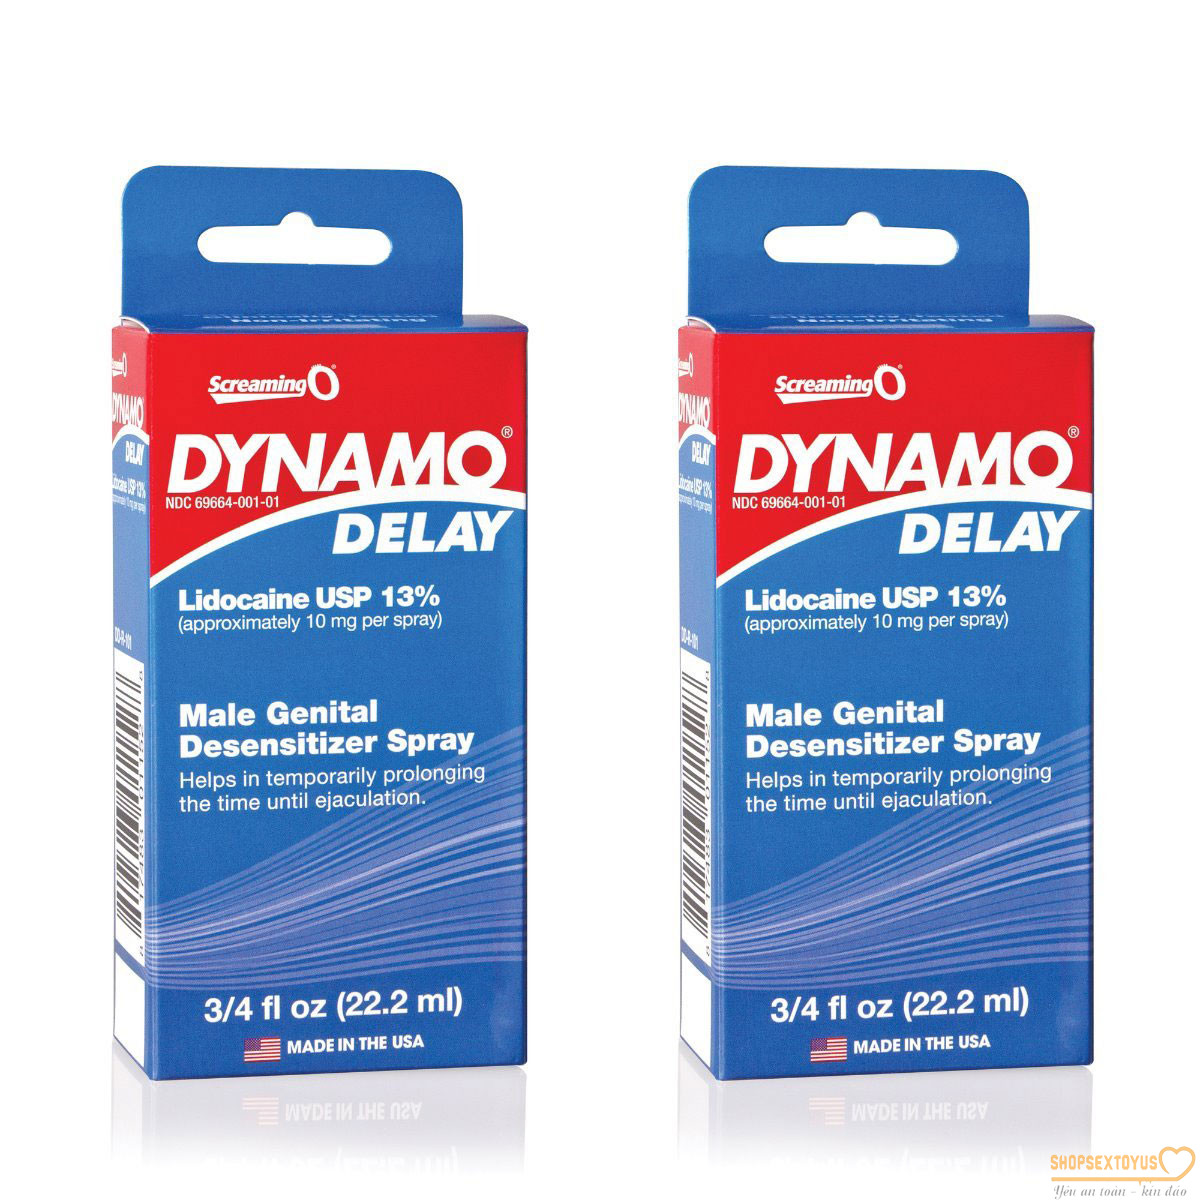 kéo dài quan hệ tăng sinh lý nam Dyamo-TXTS332 | Chai xịt Dynamo Delay dùng có tốt không, mua ở đâu giá rẻ